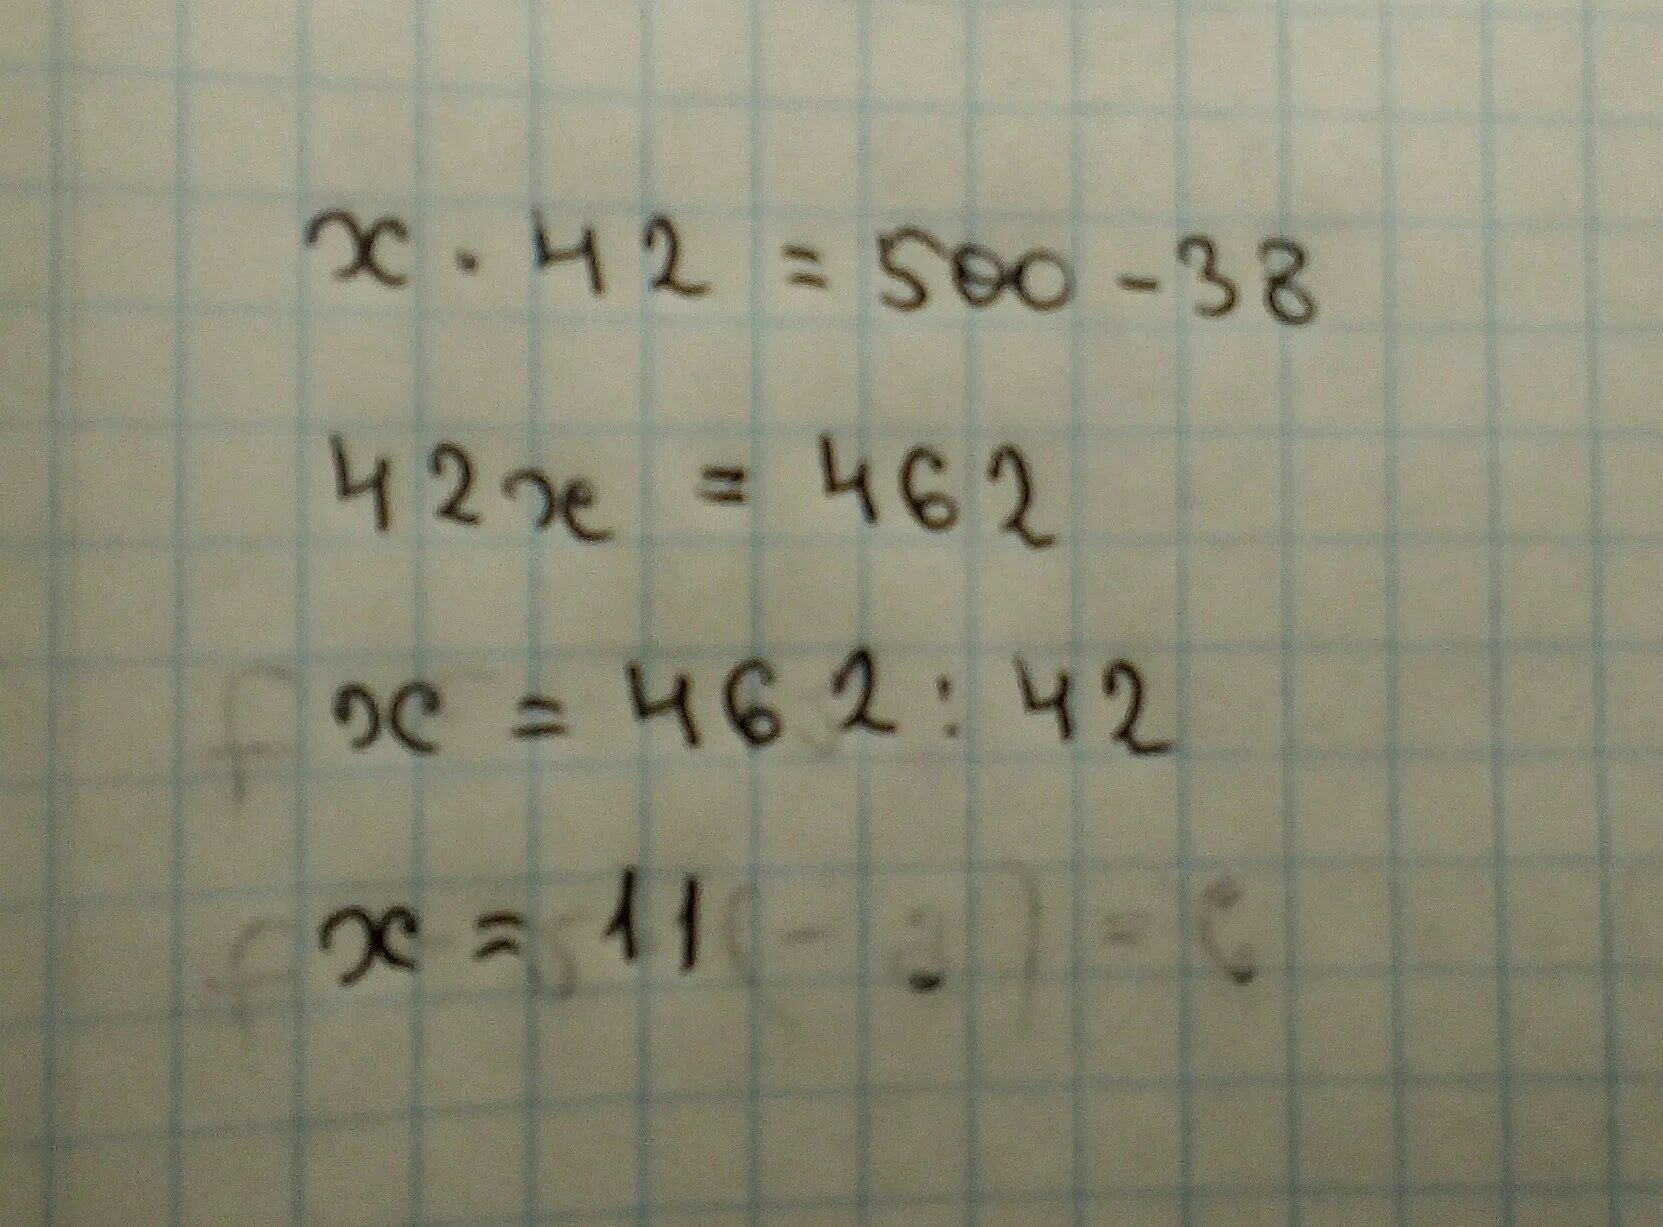 Какое число надо умножить на 42. Какое число надо умножить на 42 чтобы получить разность чисел 500 и 38. Какое число надо умножить на 4 чтобы получить разность 350 и 70. Какое число надо умножить на разность 42. Какое число надо умножить чтобы получилось разность чисел 500 и 38 ?.